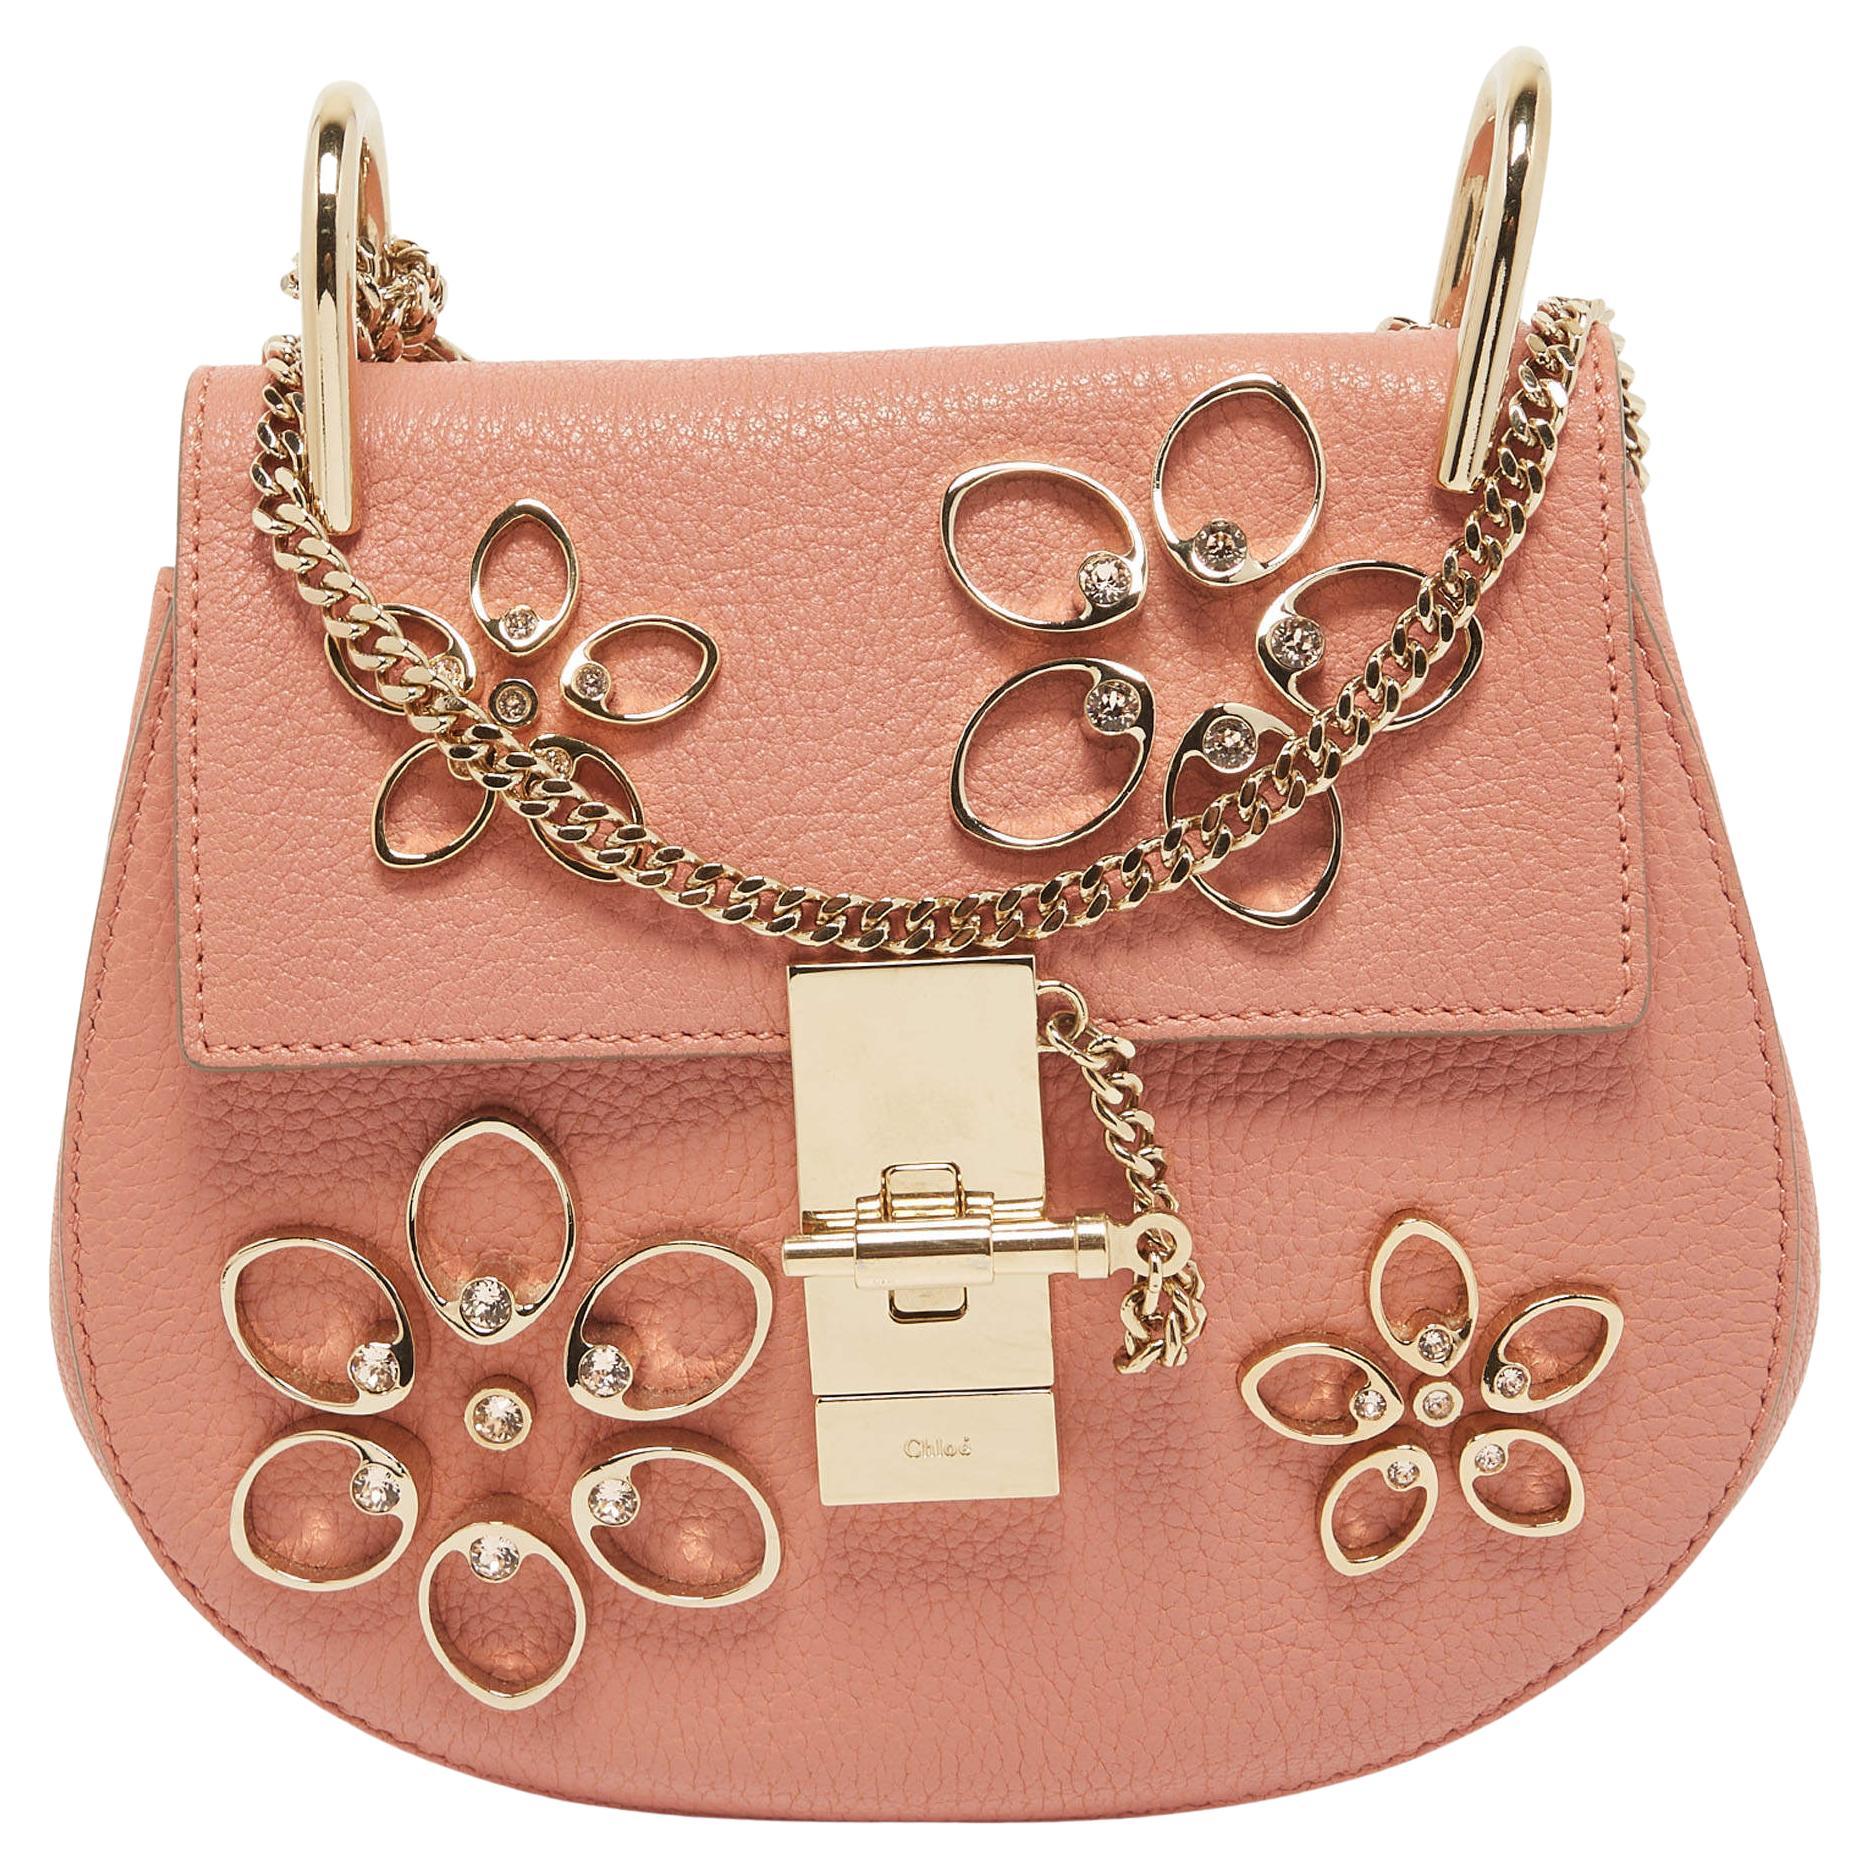 Chloe Light Pink Leather Small Crystal Flower Embellished Drew Shoulder Bag